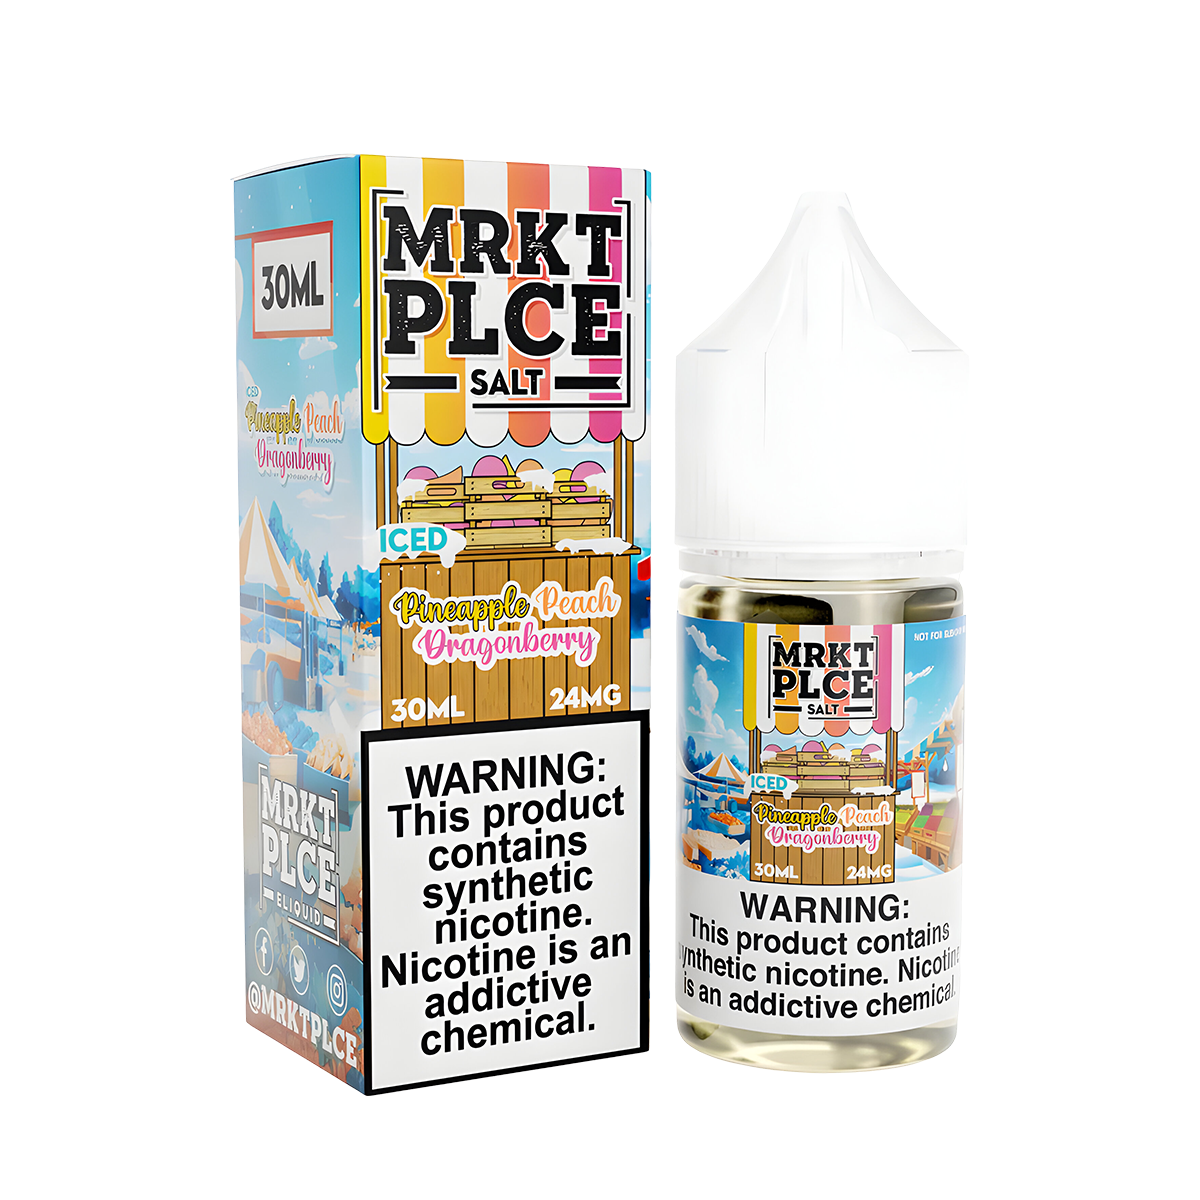 MRKT PLCE Salt Nicotine Vape Juice 24 Mg 30 Ml Iced Pineapple Peach Dragonberry